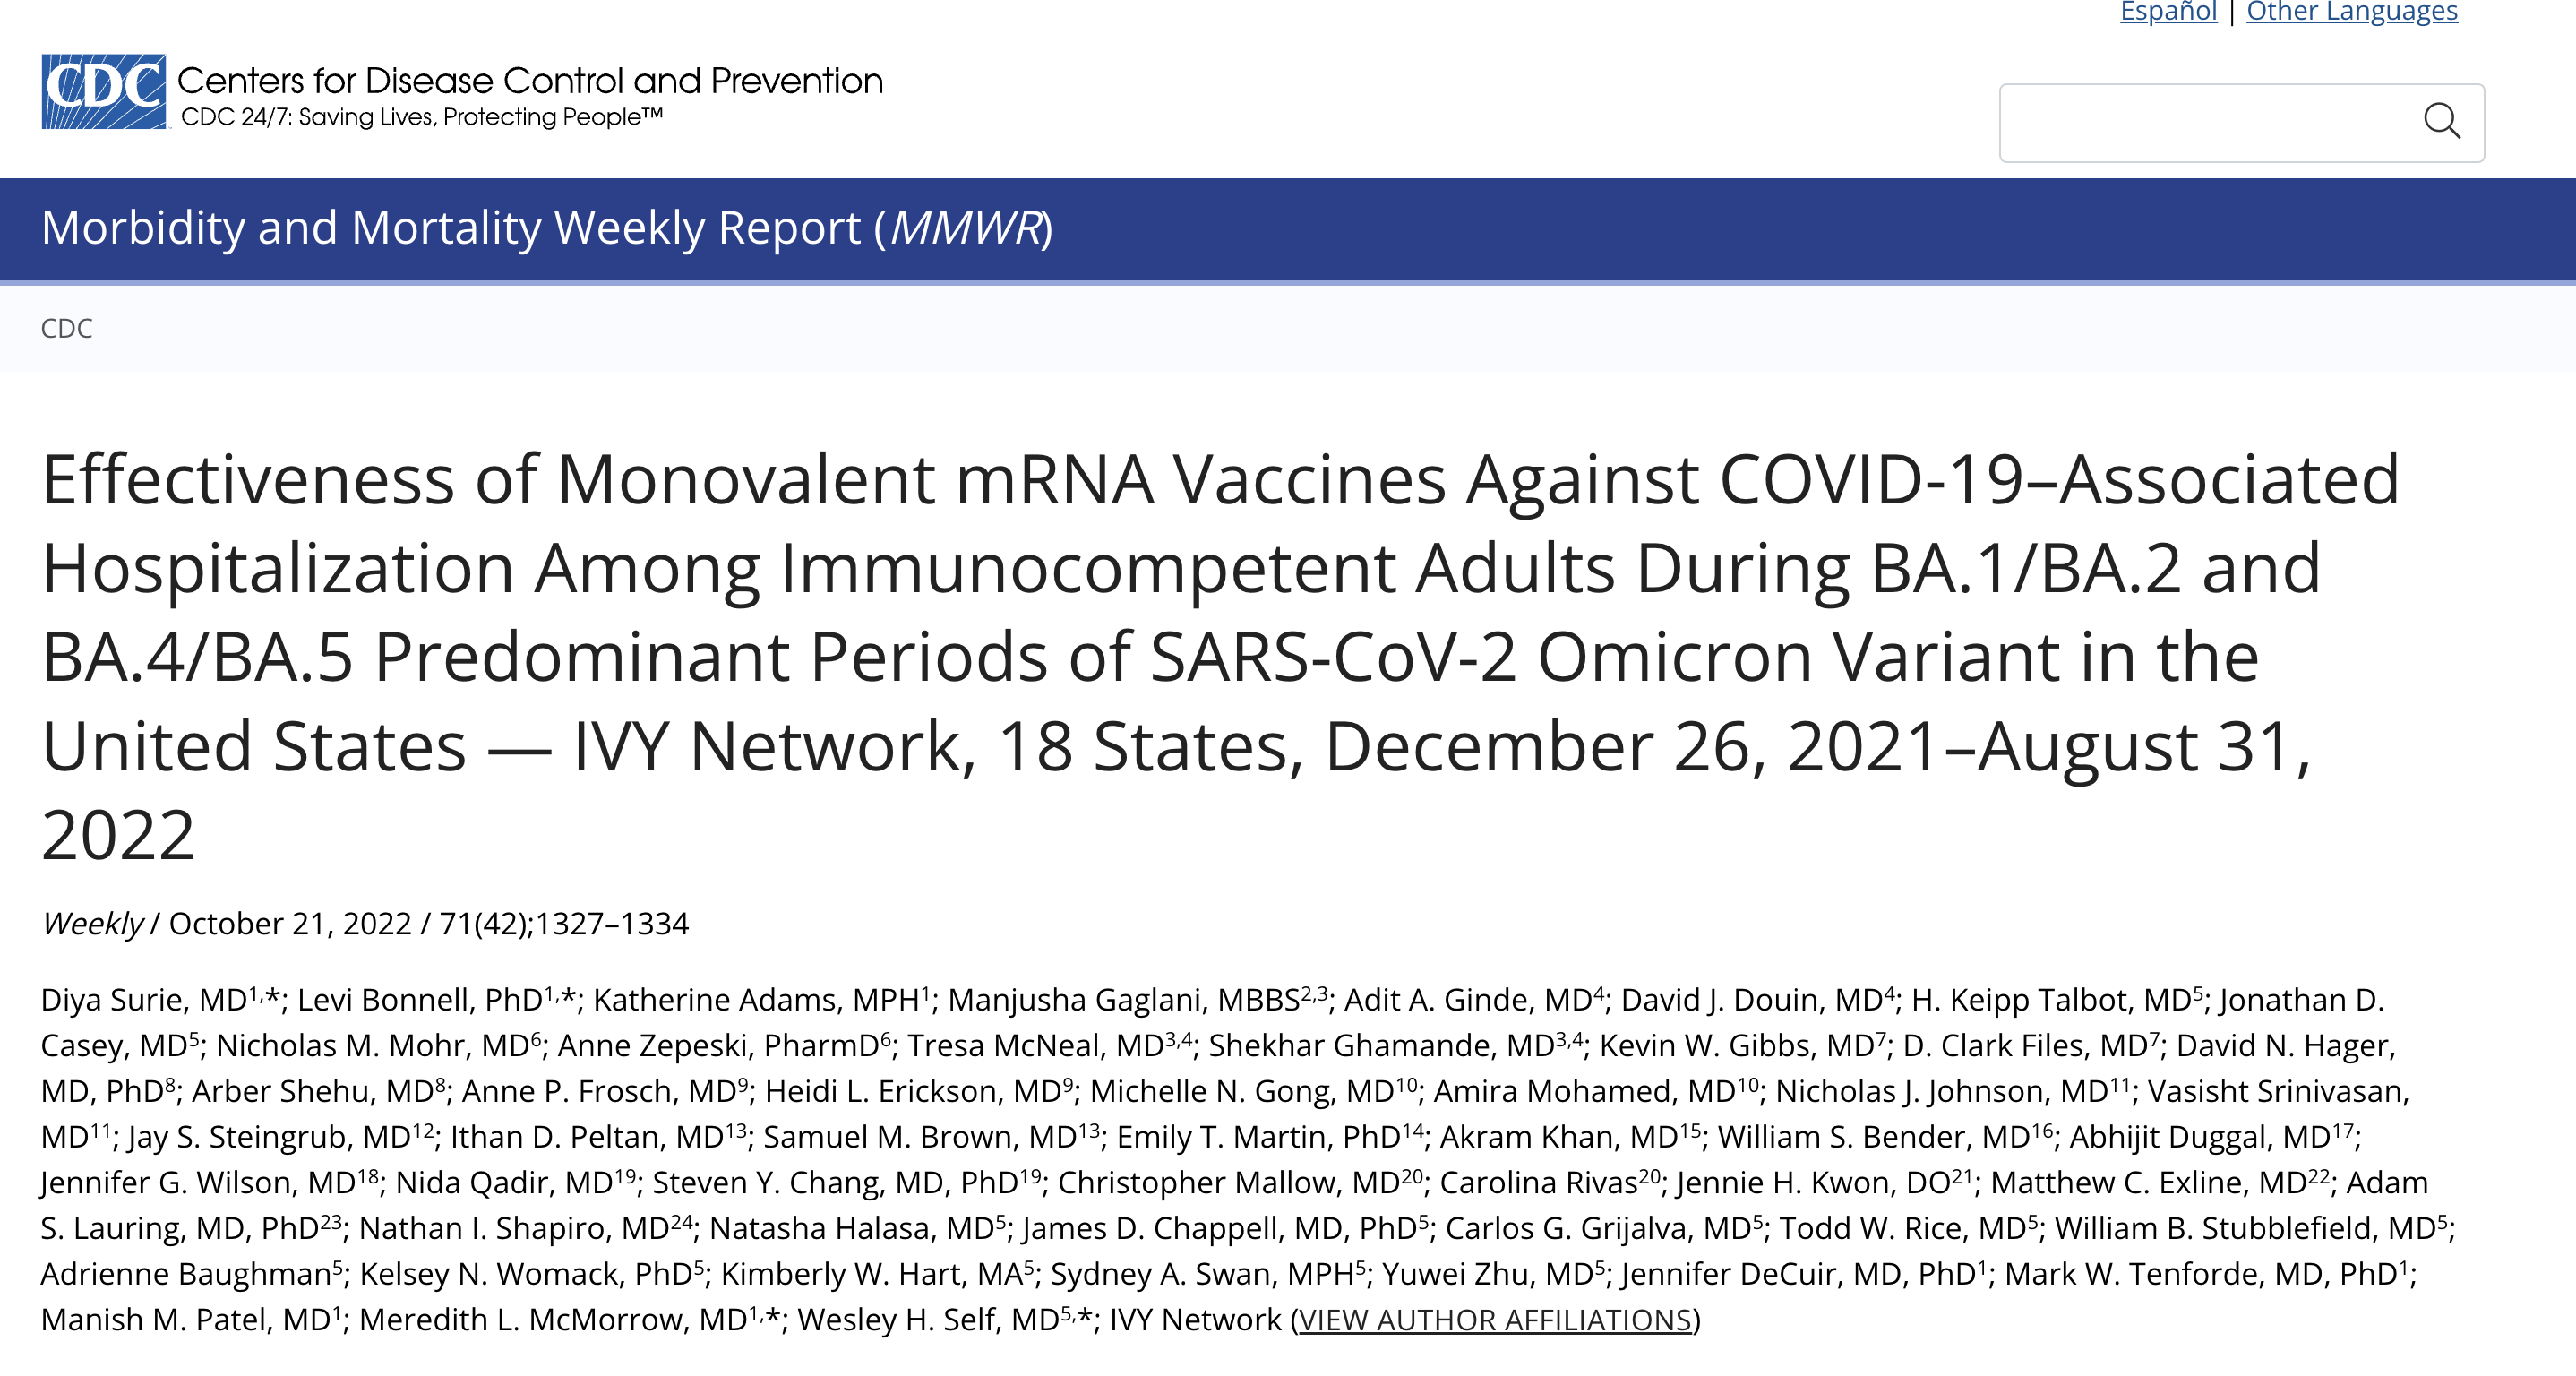 米国におけるSARS-CoV-2オミクロン変異体のBA.1/BA.2およびBA.4/BA.5優勢期における免疫無能力 成人のCOVID-19関連入院に対する一価mRNAワクチンの有効性 - IVYネットワーク、18州、2021年12月26日～2022年8月31日